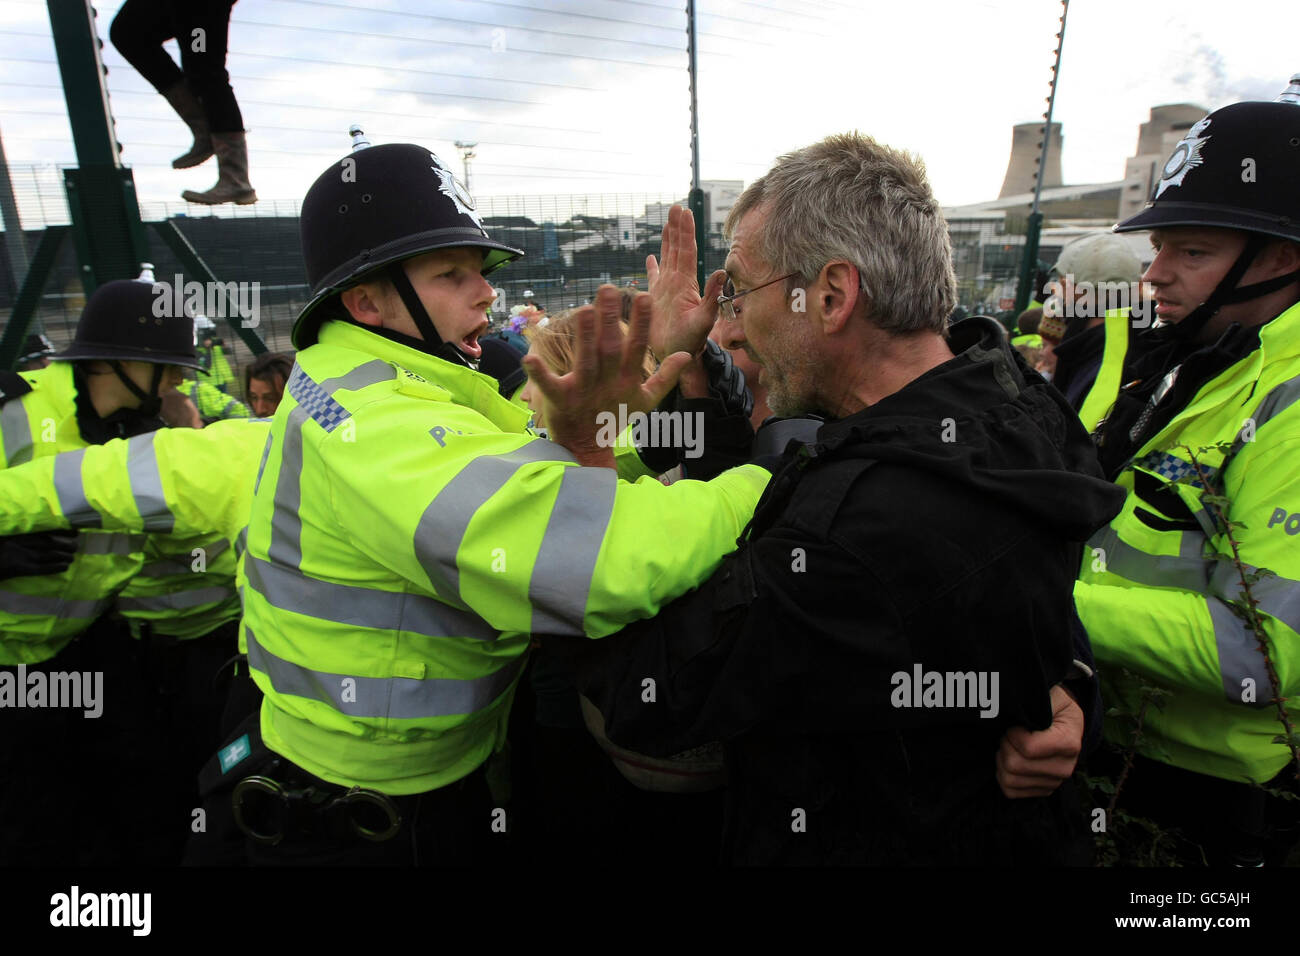 Protesta climática. Los manifestantes contra el cambio climático se enfrentan a la policía cerca de la central eléctrica Ratcliffe-on-Soar, de E.ON. Foto de stock